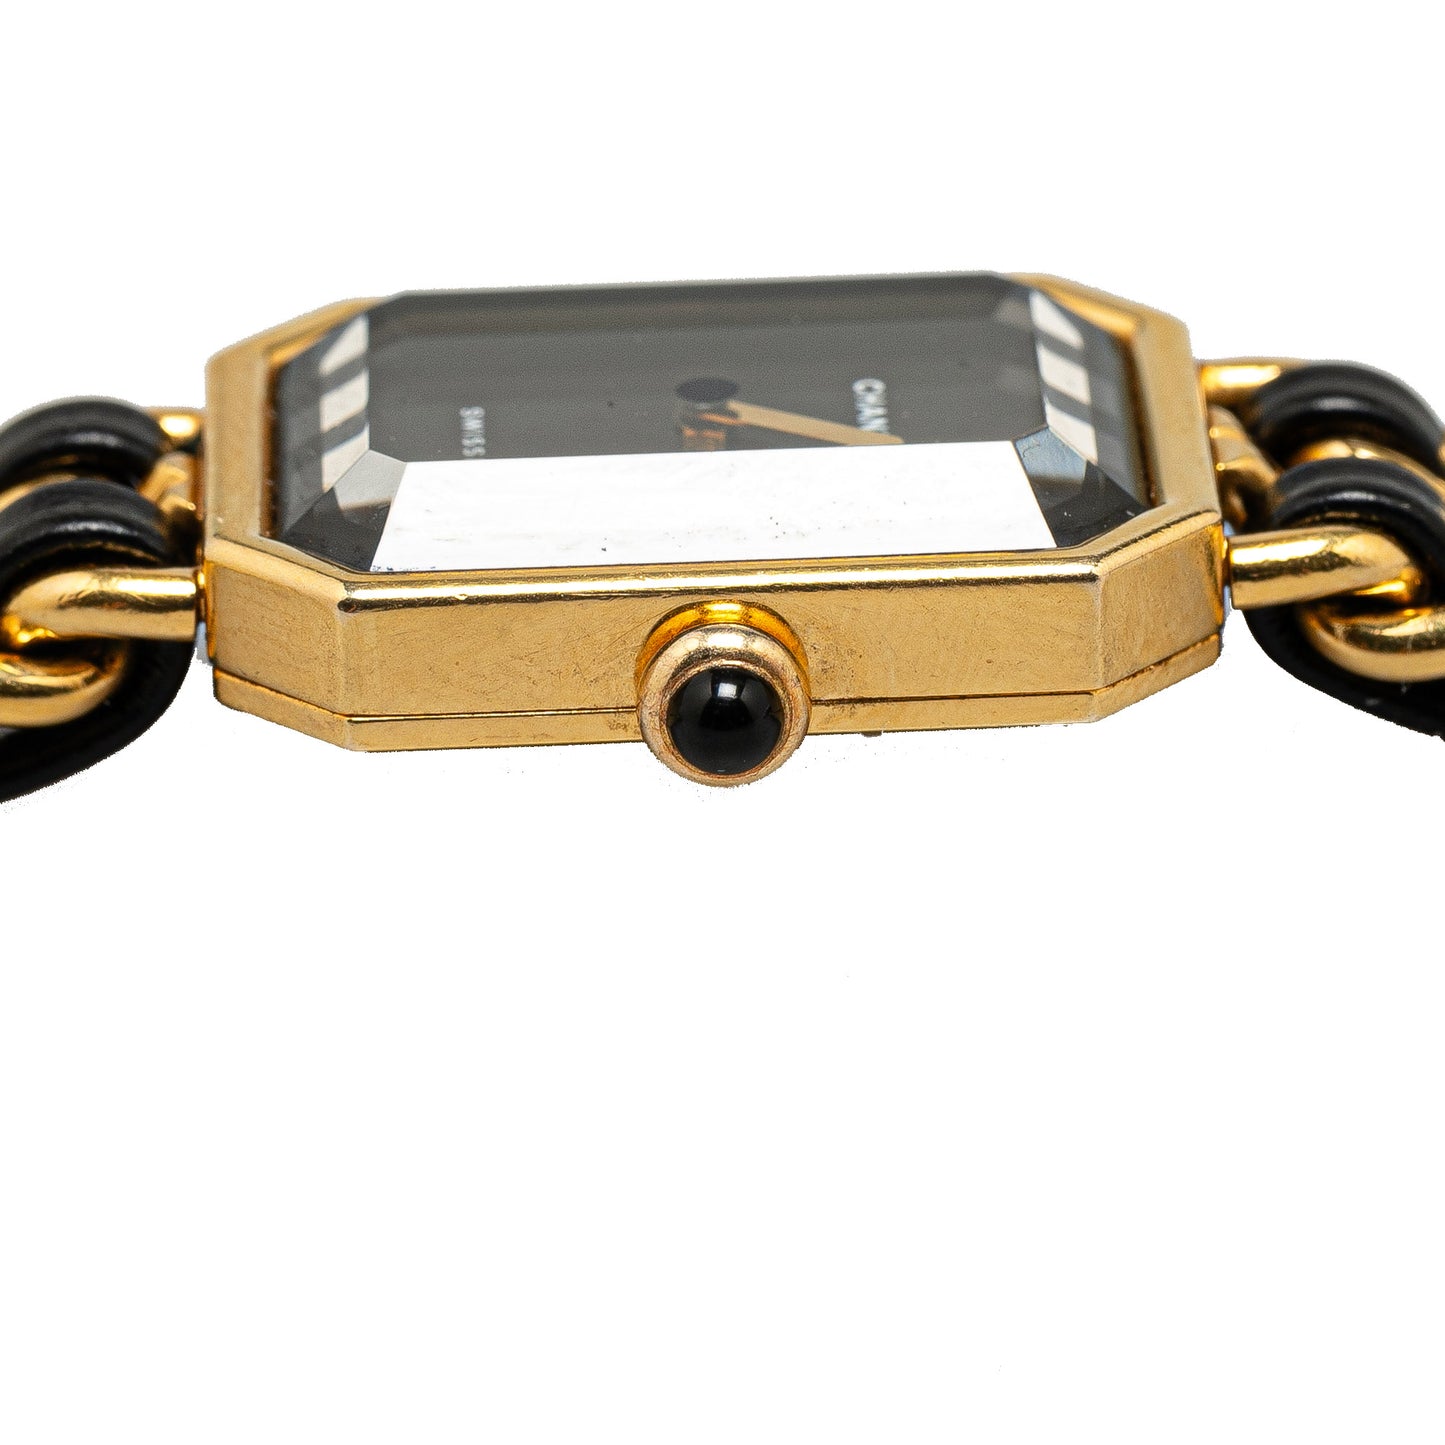 Chanel Quartz Stainless Steel Premiere Chaine Watch Gold